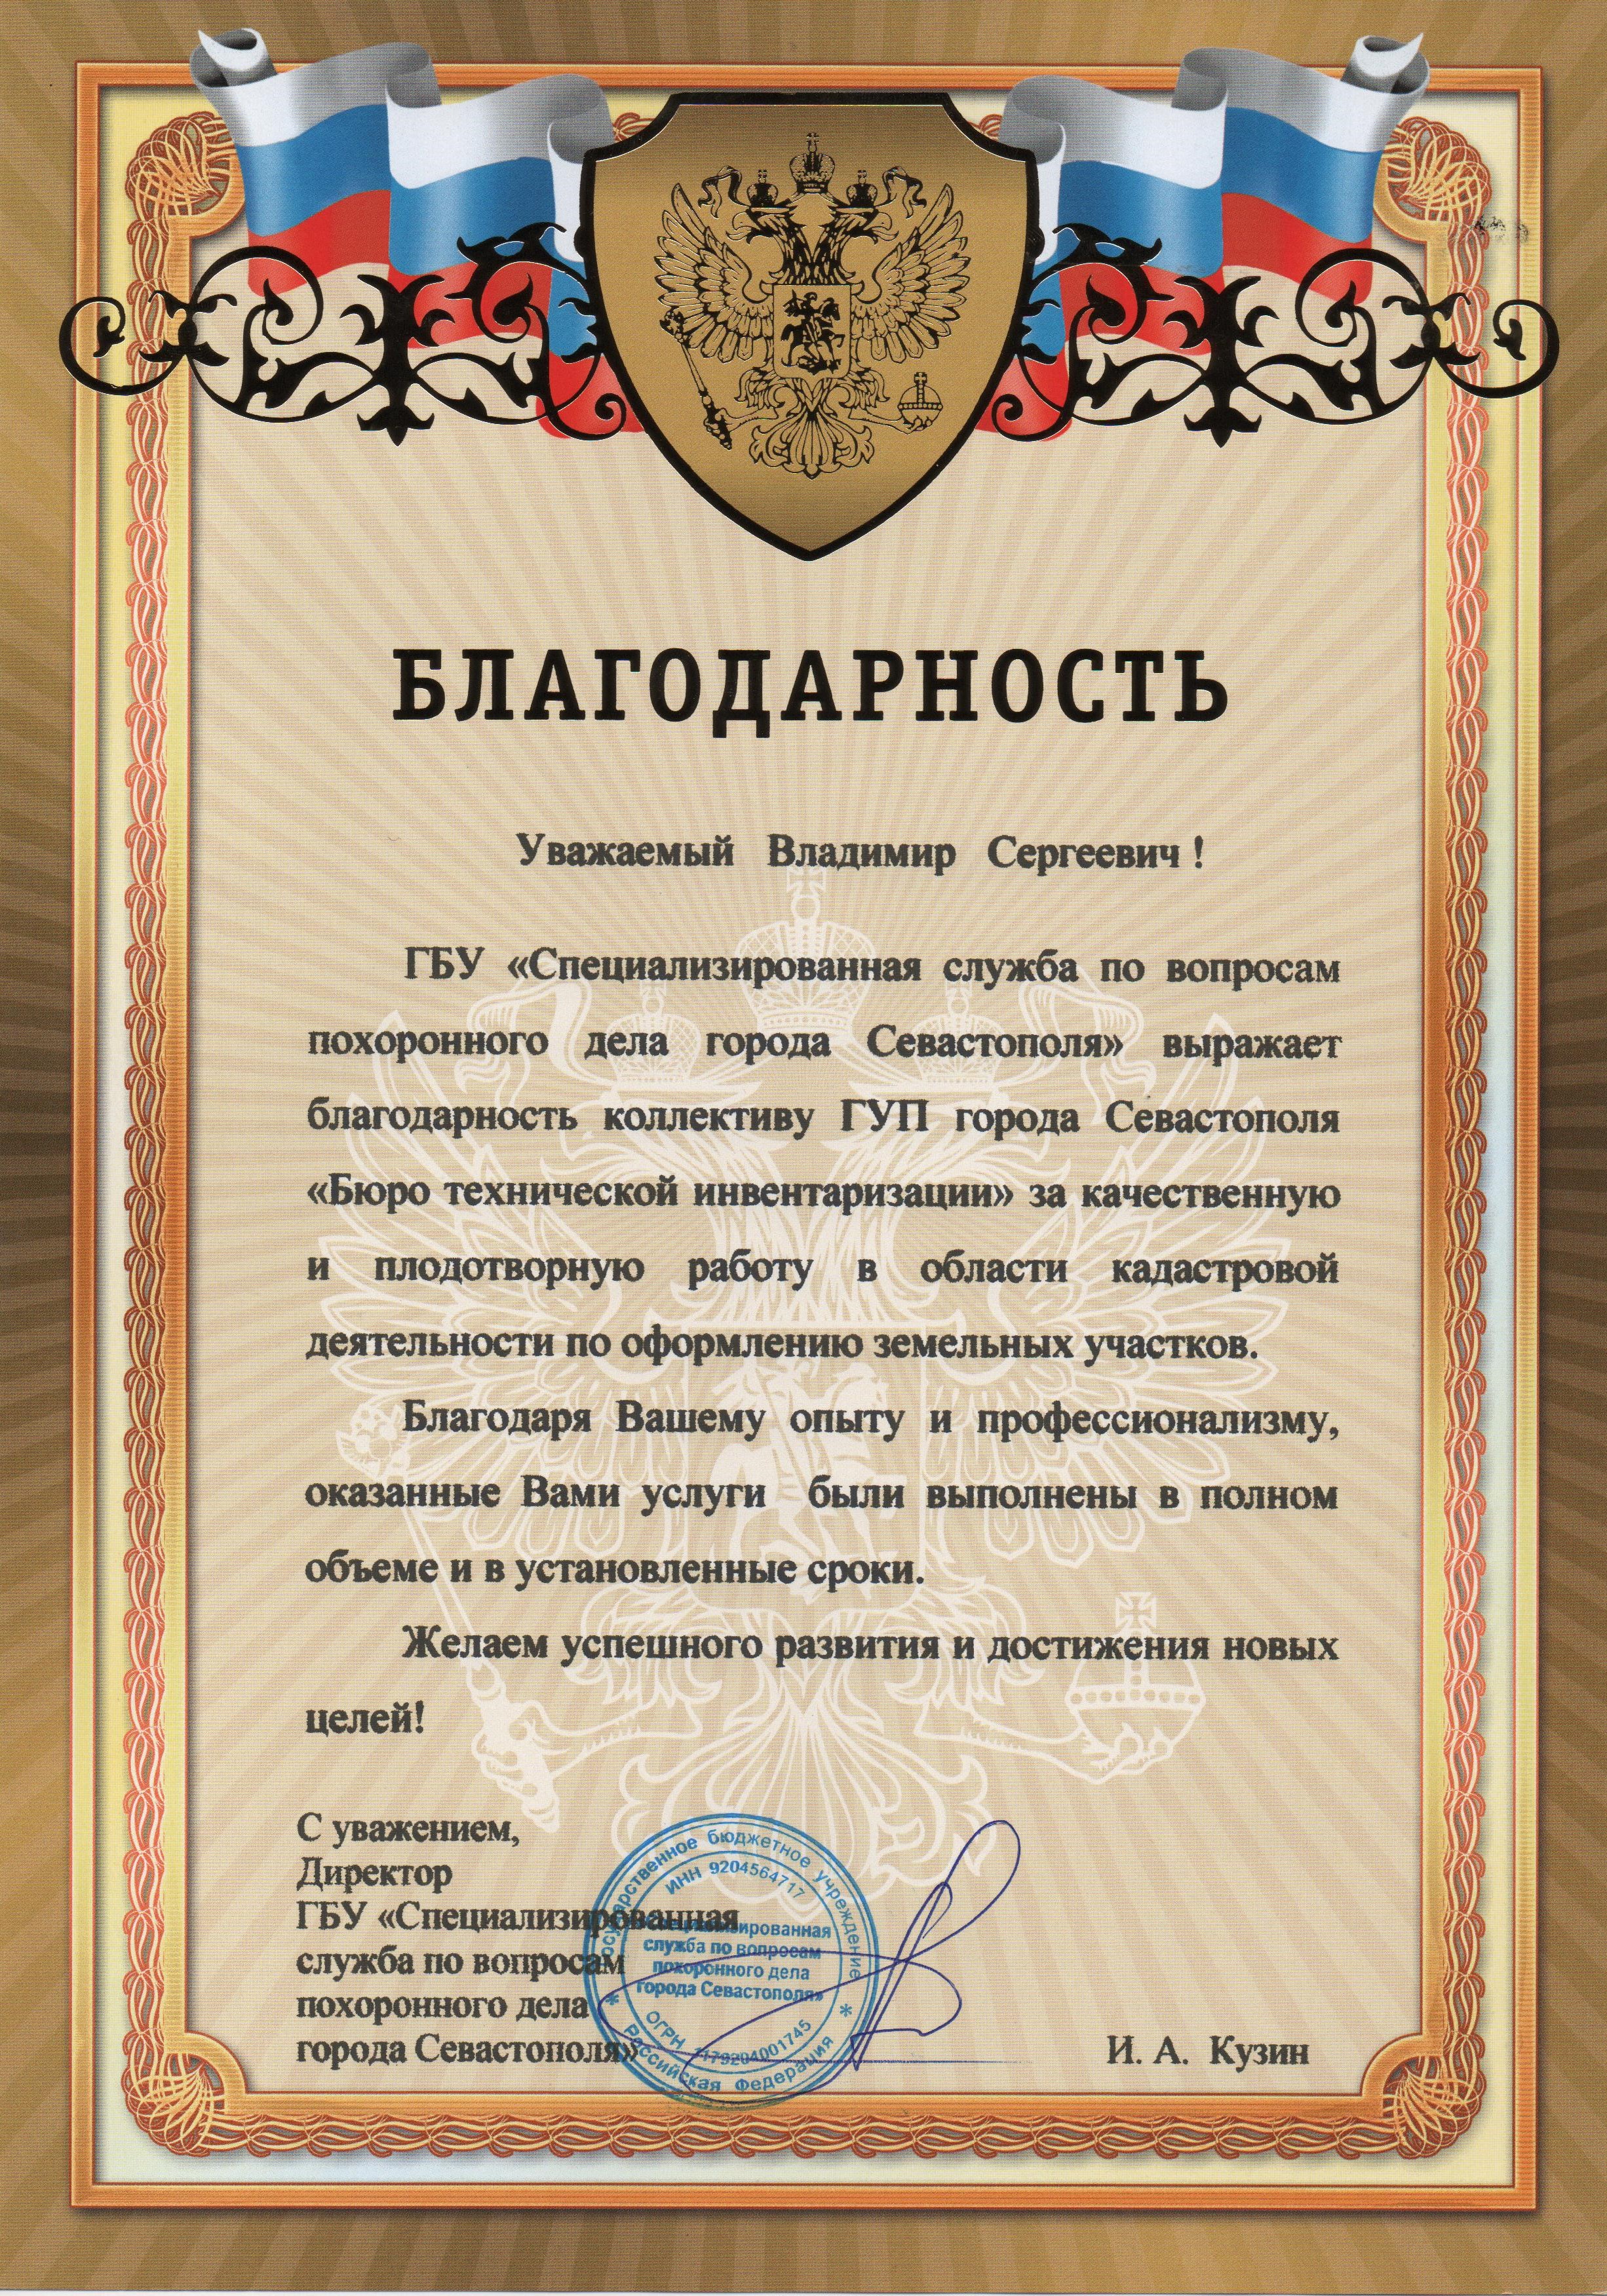 Благодарность ГБУ Специализированная служба по вопросам похоронного дела города Севастополя 2018